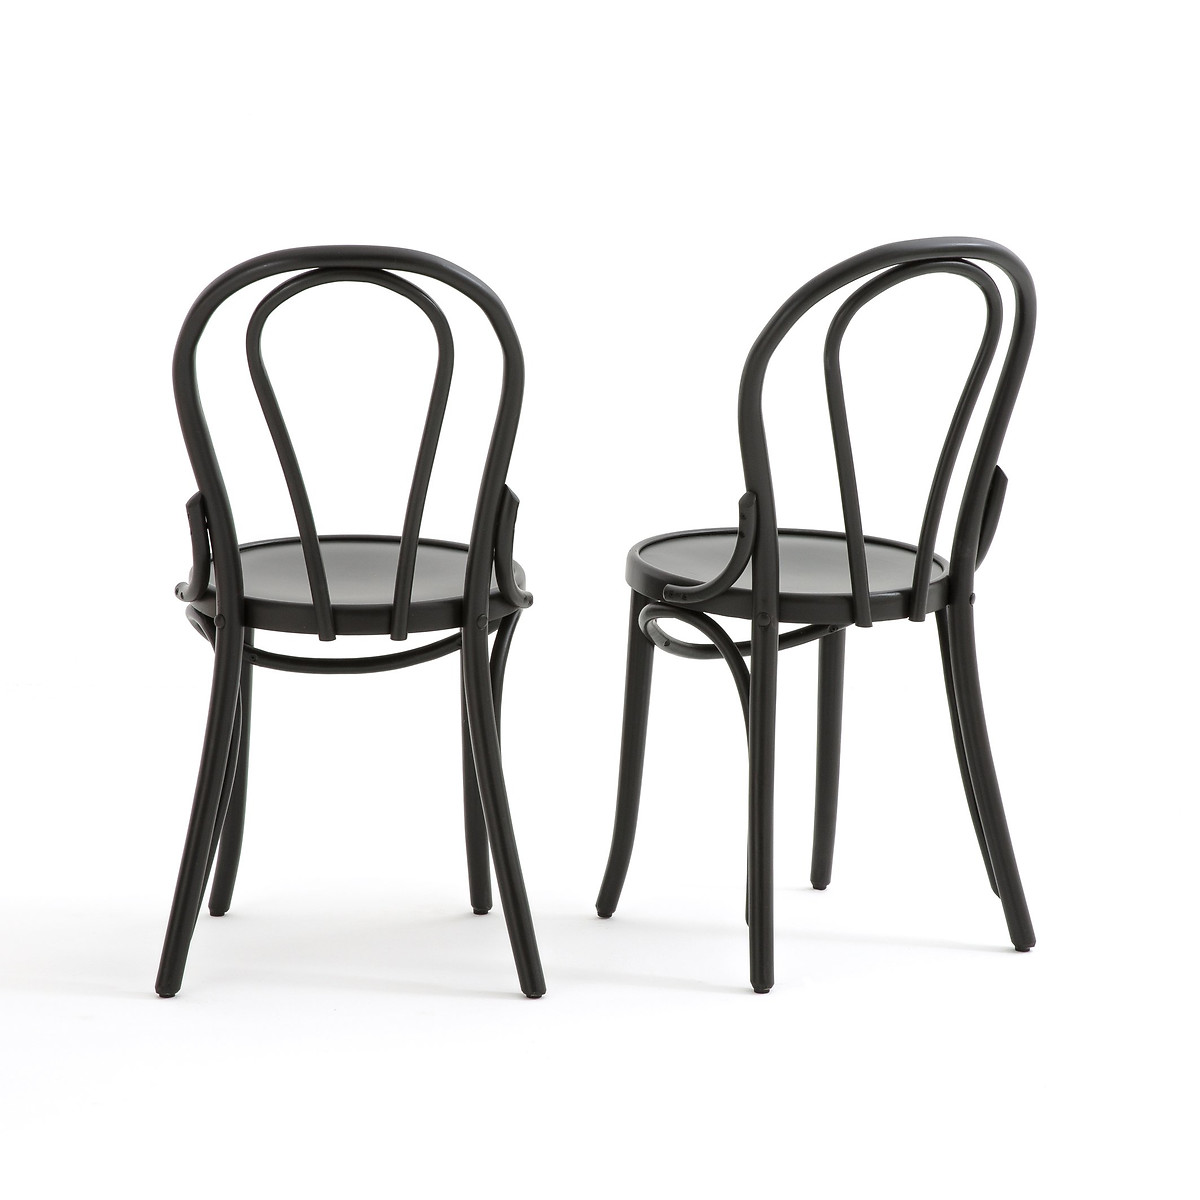 

Комплект из 2 высоких стульев LaRedoute, Бежевый, Комплект из 2 высоких стульев Bistro единый размер бежевый